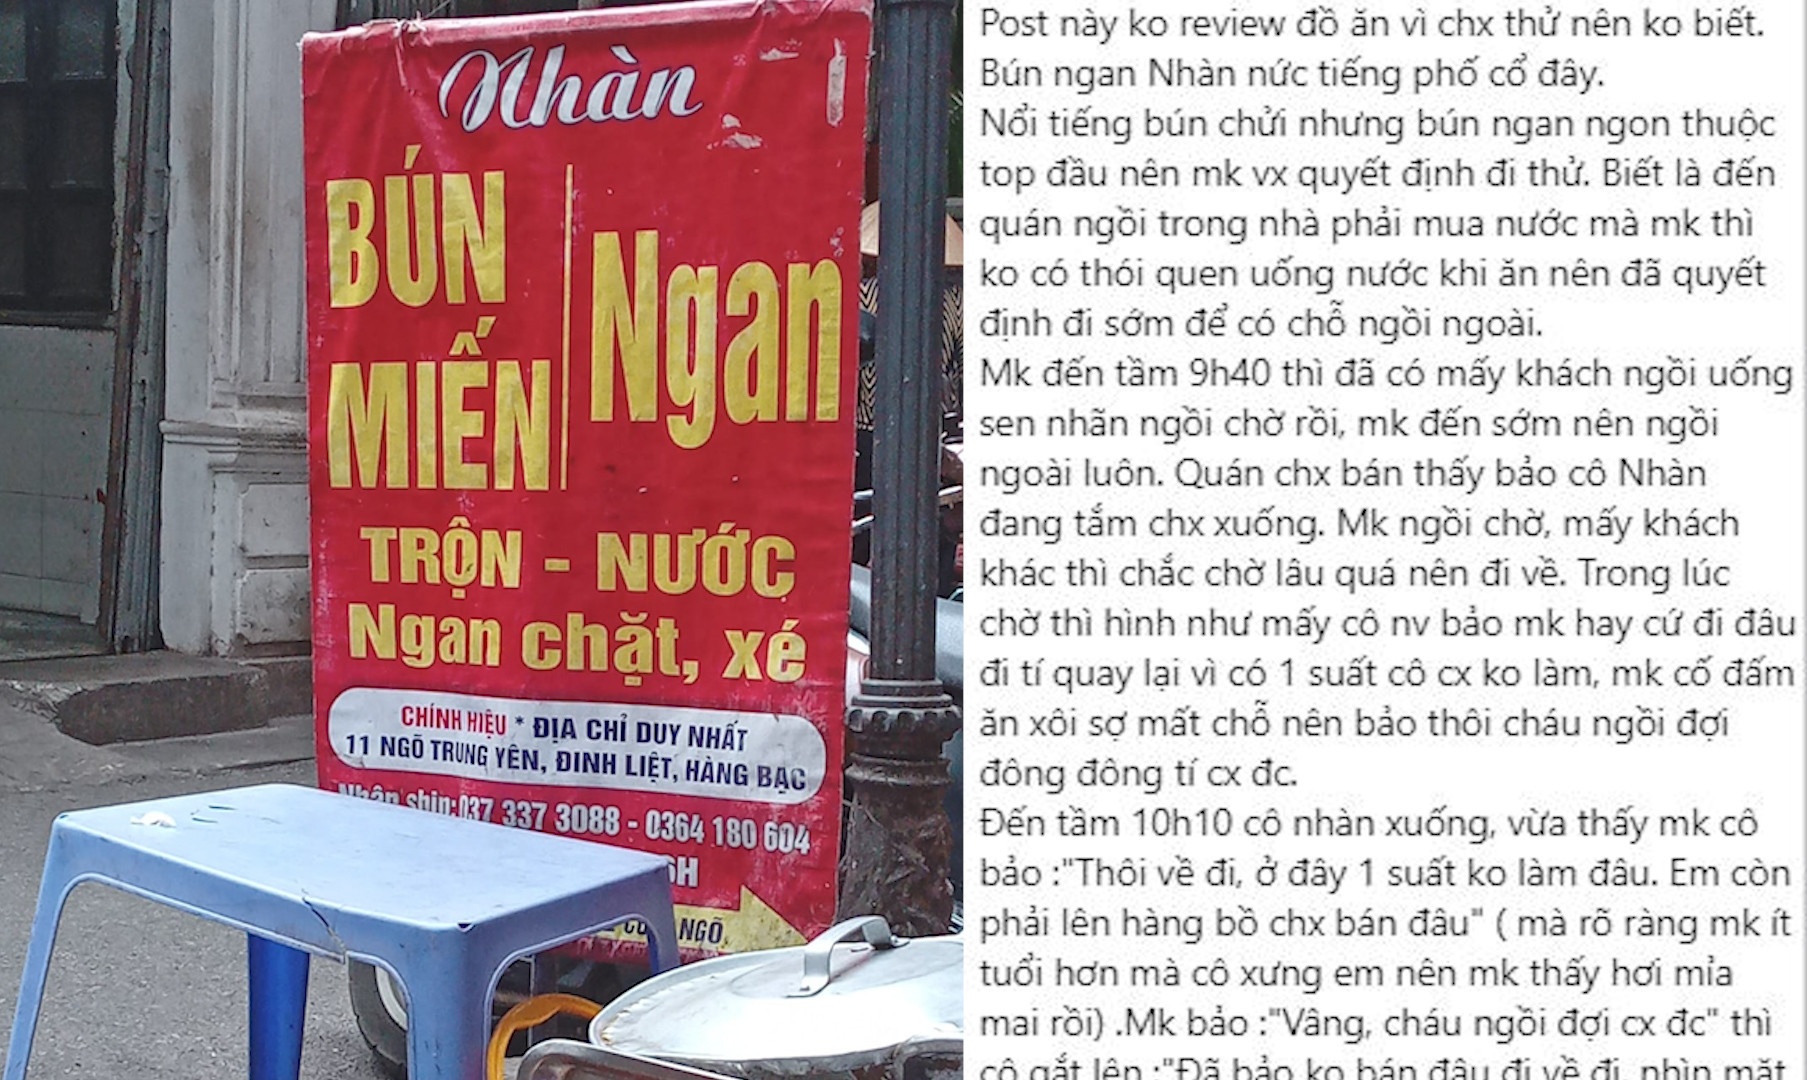 Chủ quán ngan Nhàn nổi tiếng Hà Nội bị tố chửi khách, đòi đốt vía - ảnh 1